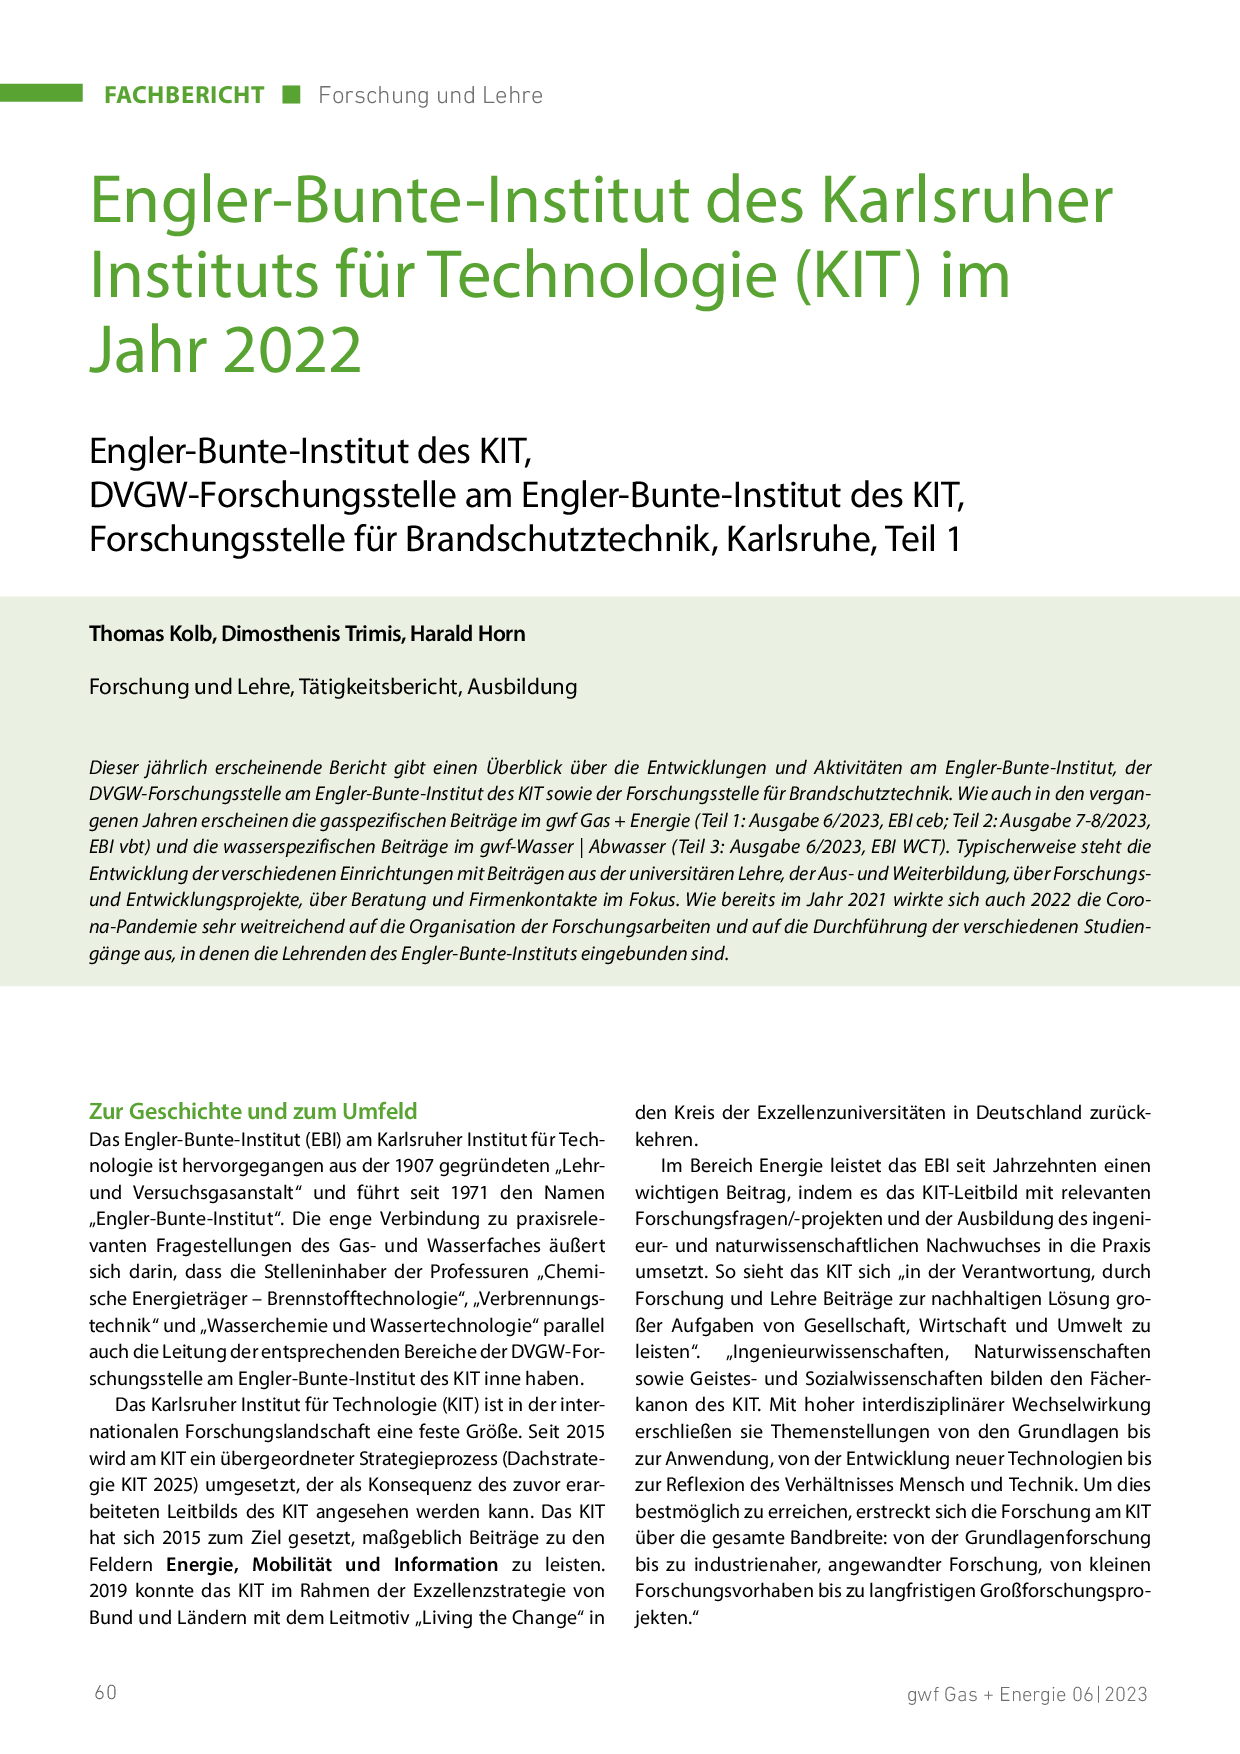 Engler-Bunte-Institut des Karlsruher Instituts für Technologie (KIT) im Jahr 2019